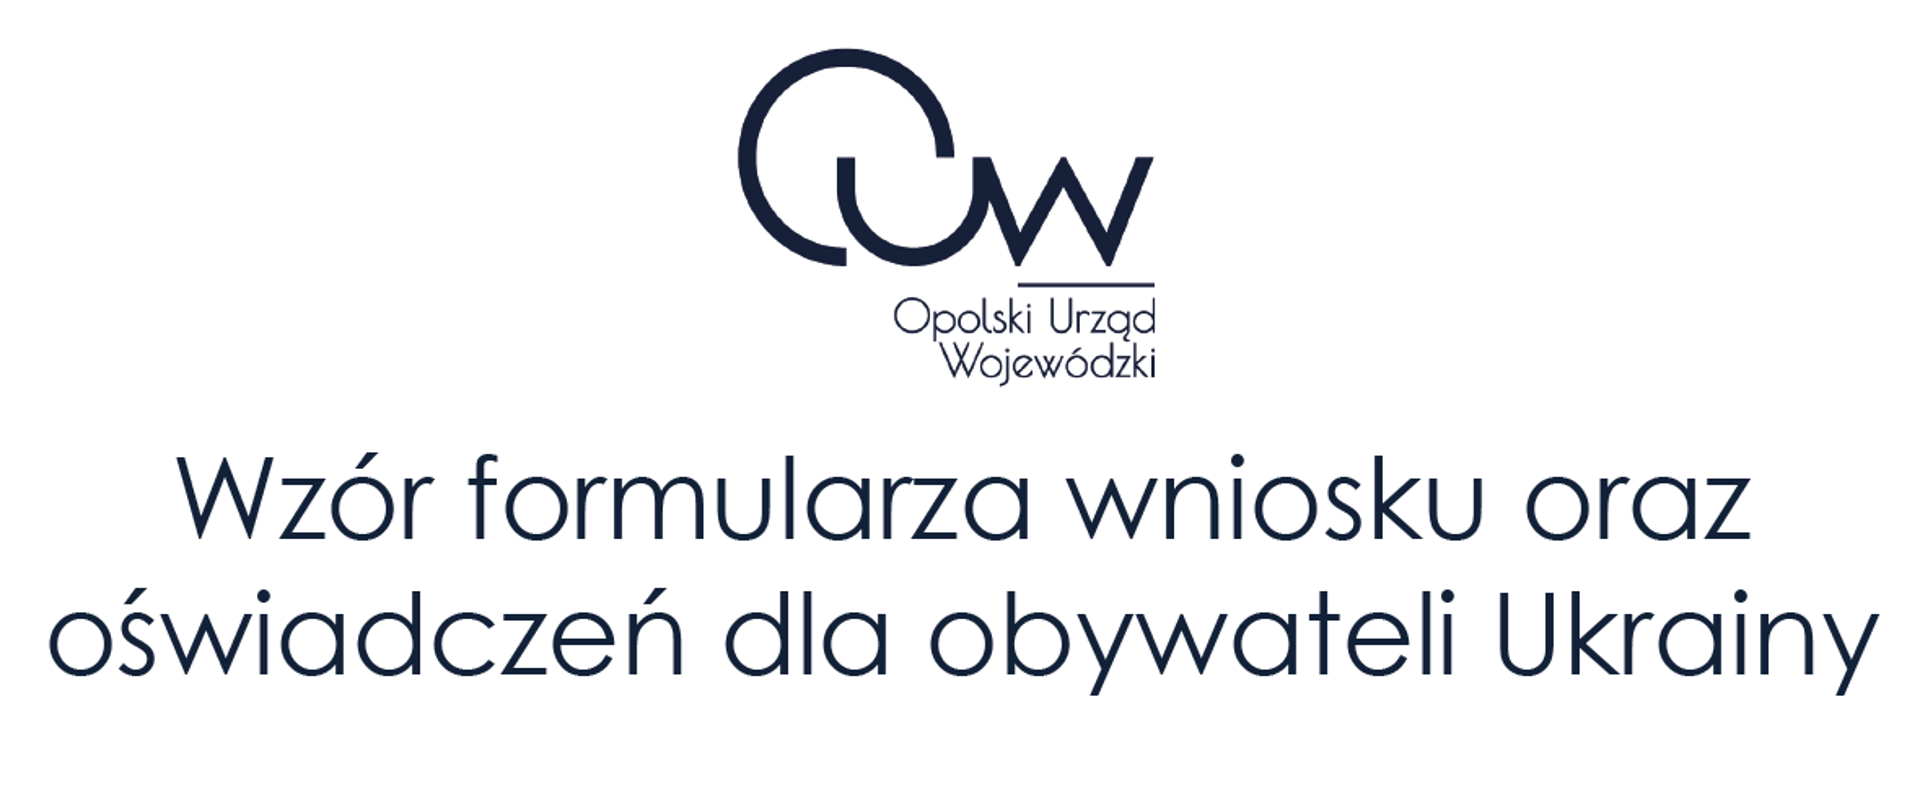 Grafika z logotypem Opolskiego Urzędu Wojewódzkiego oraz wzór oświadczenia